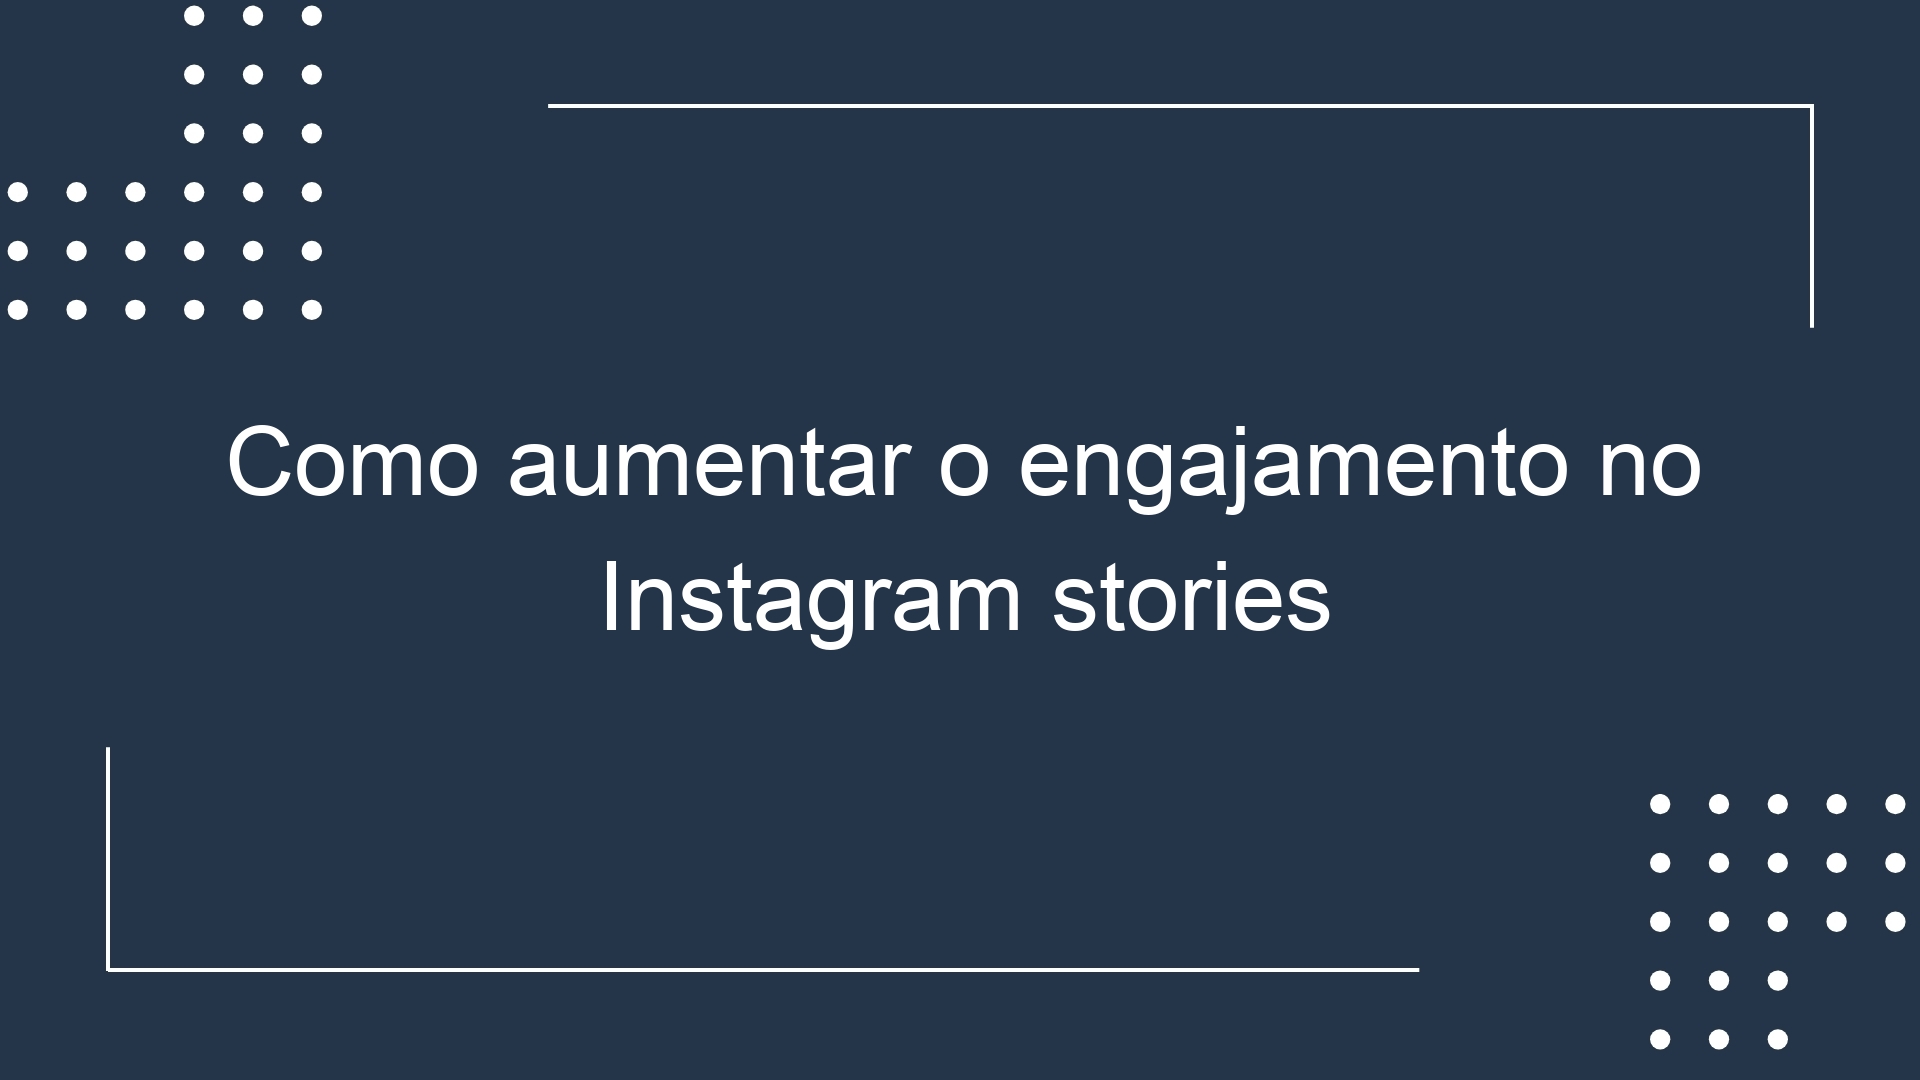 Como aumentar o engajamento no Instagram stories